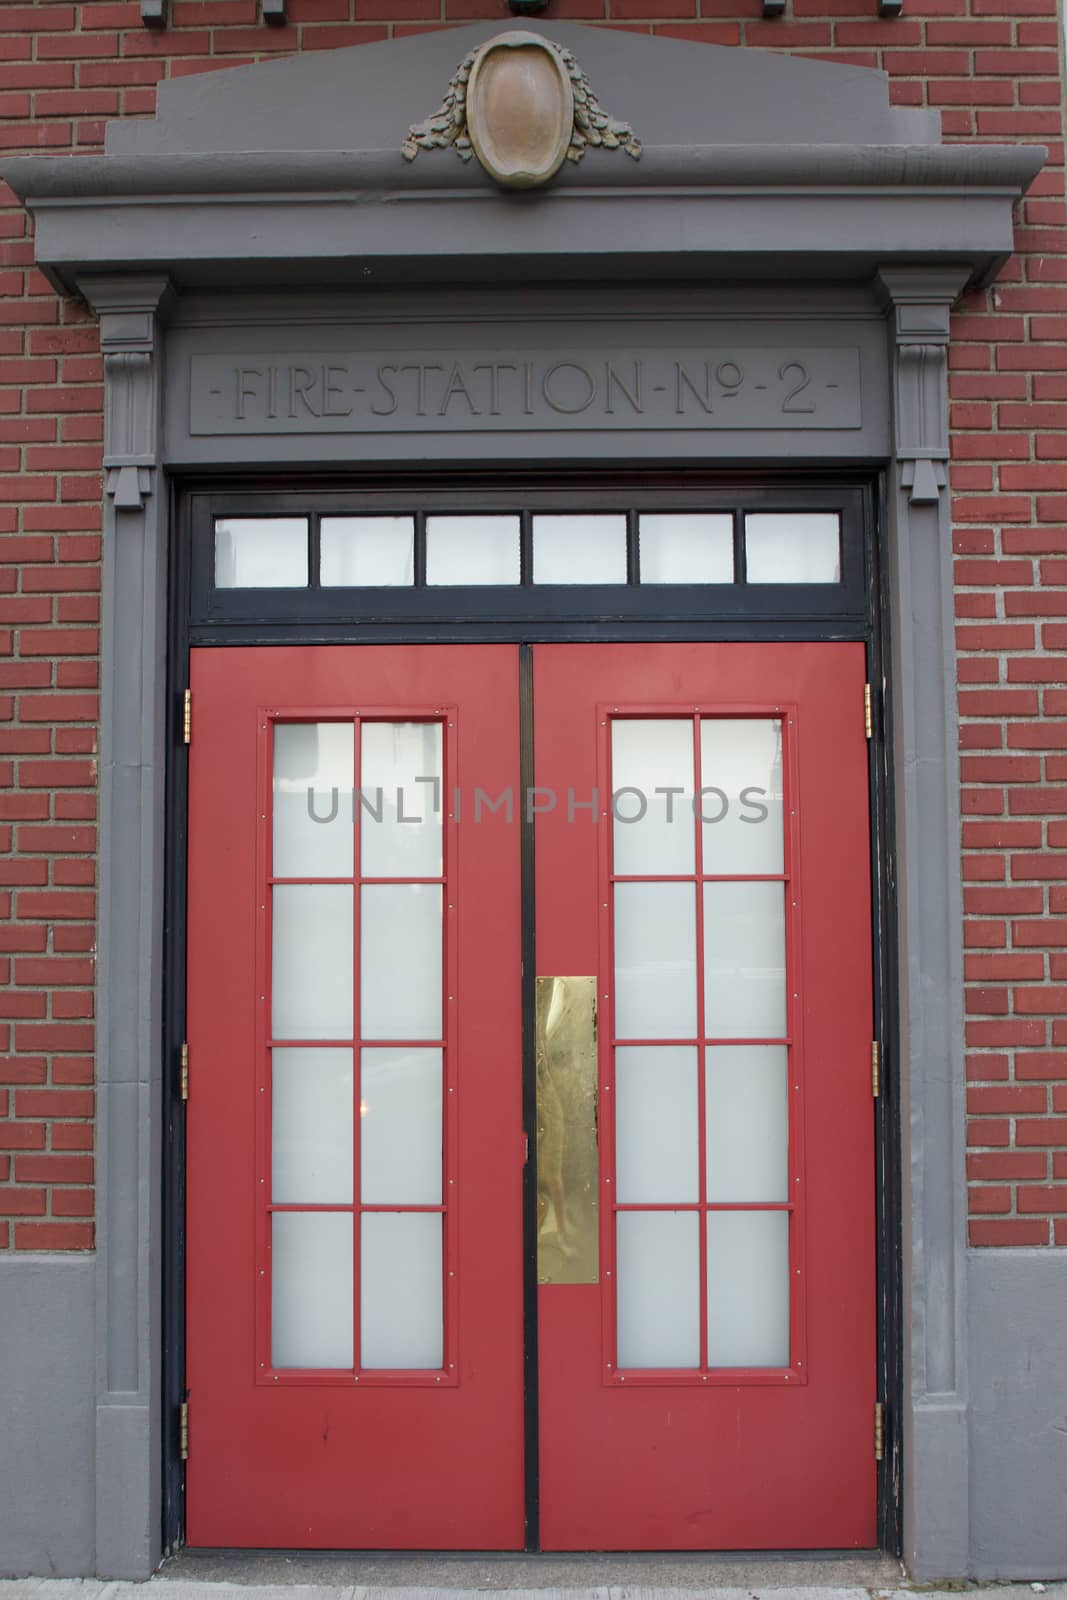 Fire Station Entrance by jhlemmer